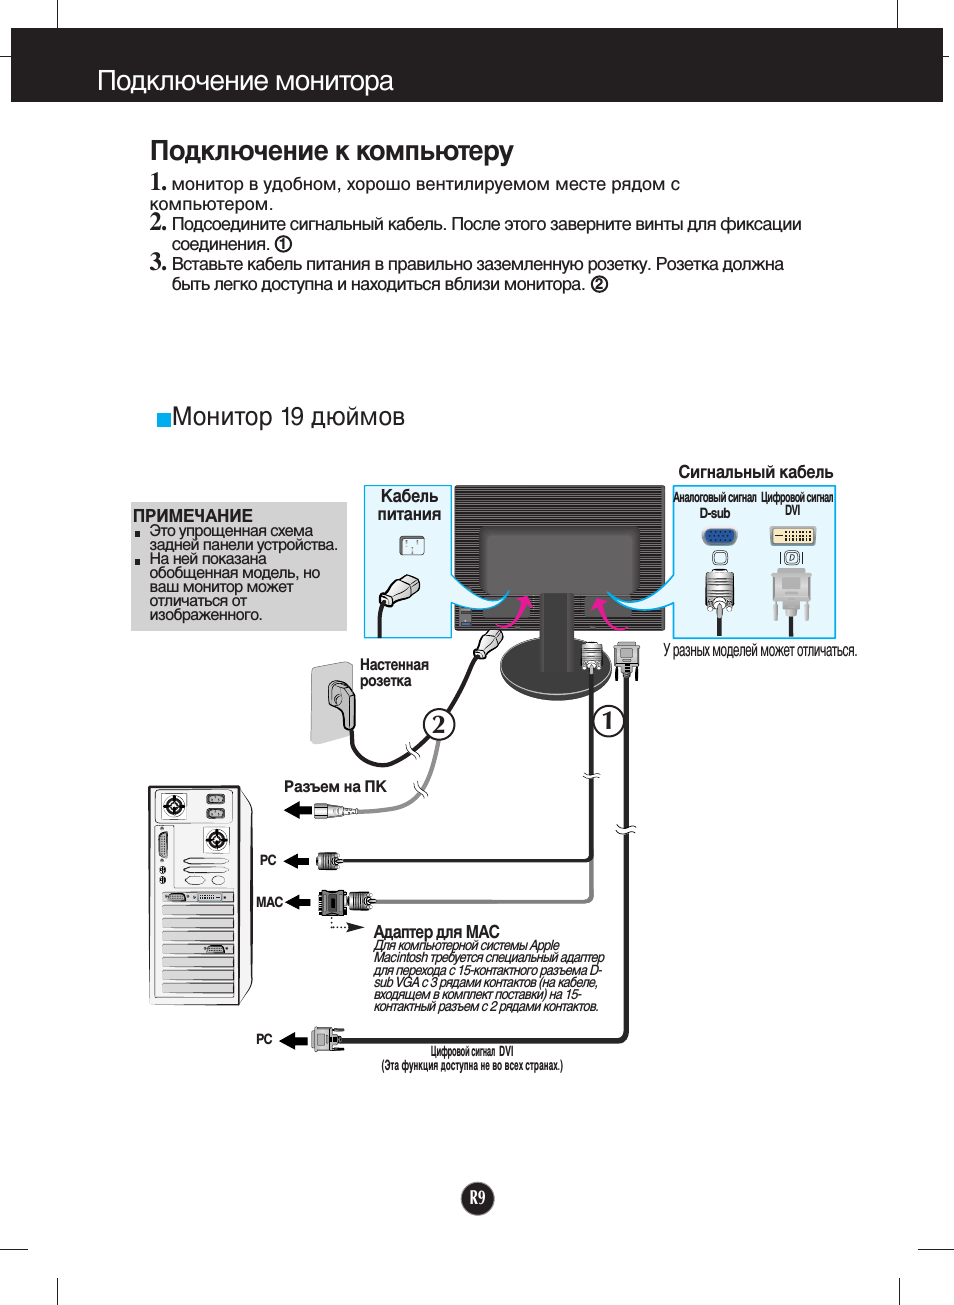 Планшет как второй монитор для ПК: инструкция к подключению